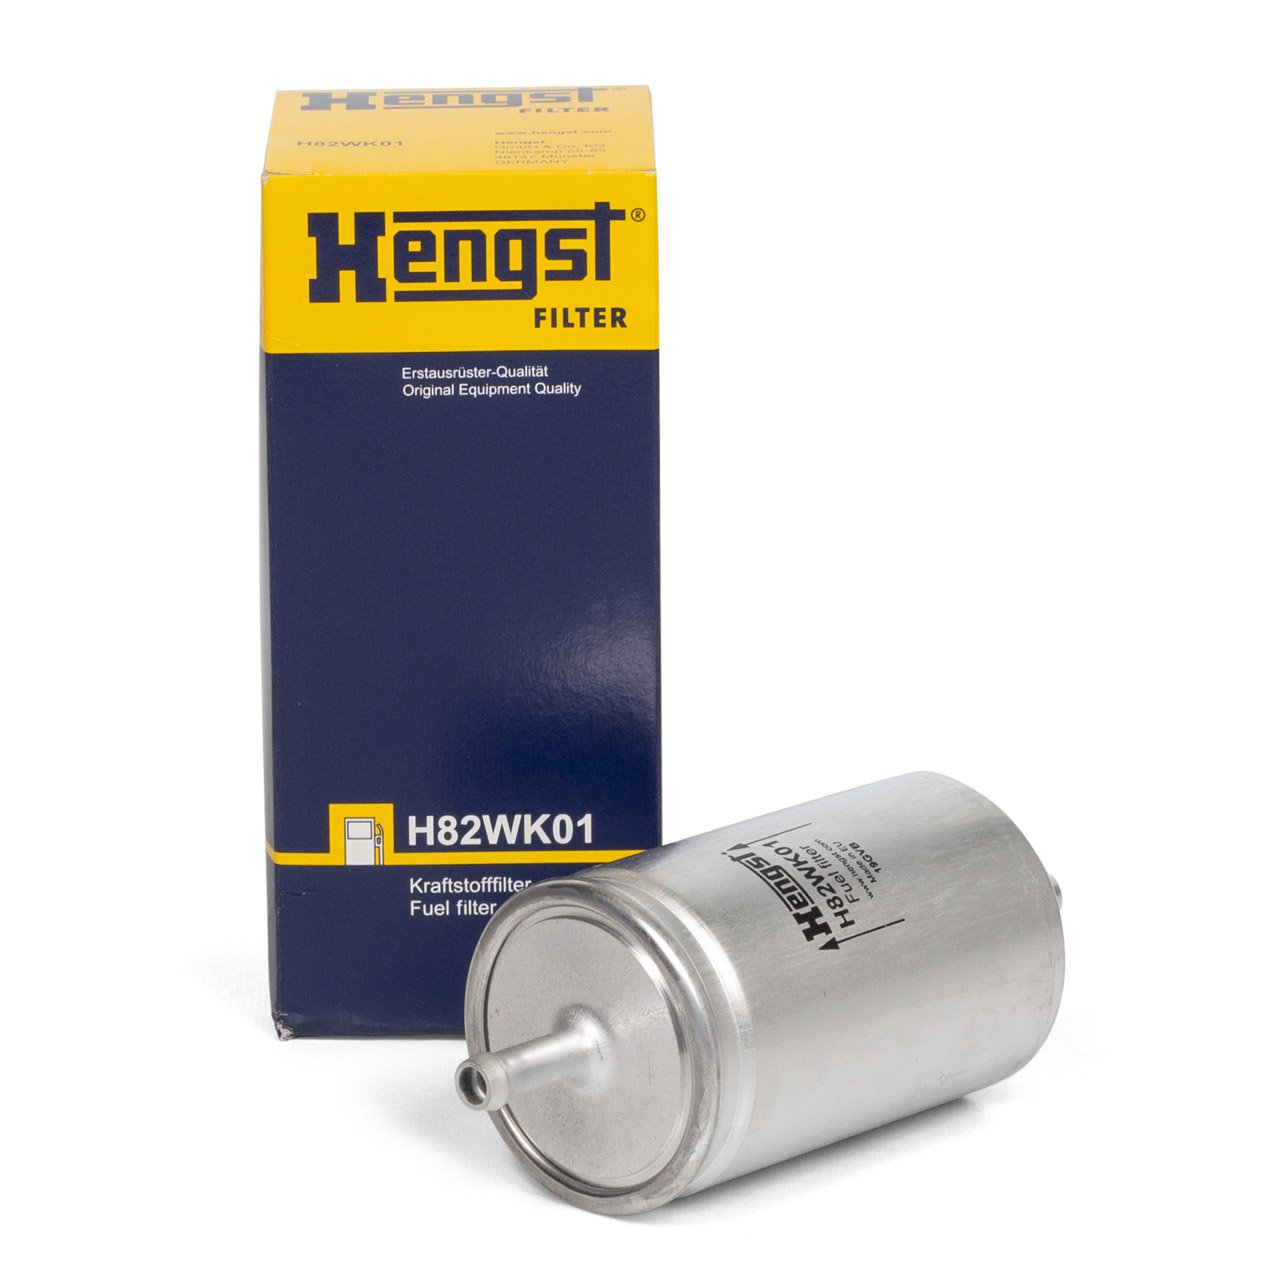 HENGST H82WK01 Kraftstofffilter für OPEL ASTRA F CORSA A KADETT E VECTRA A B